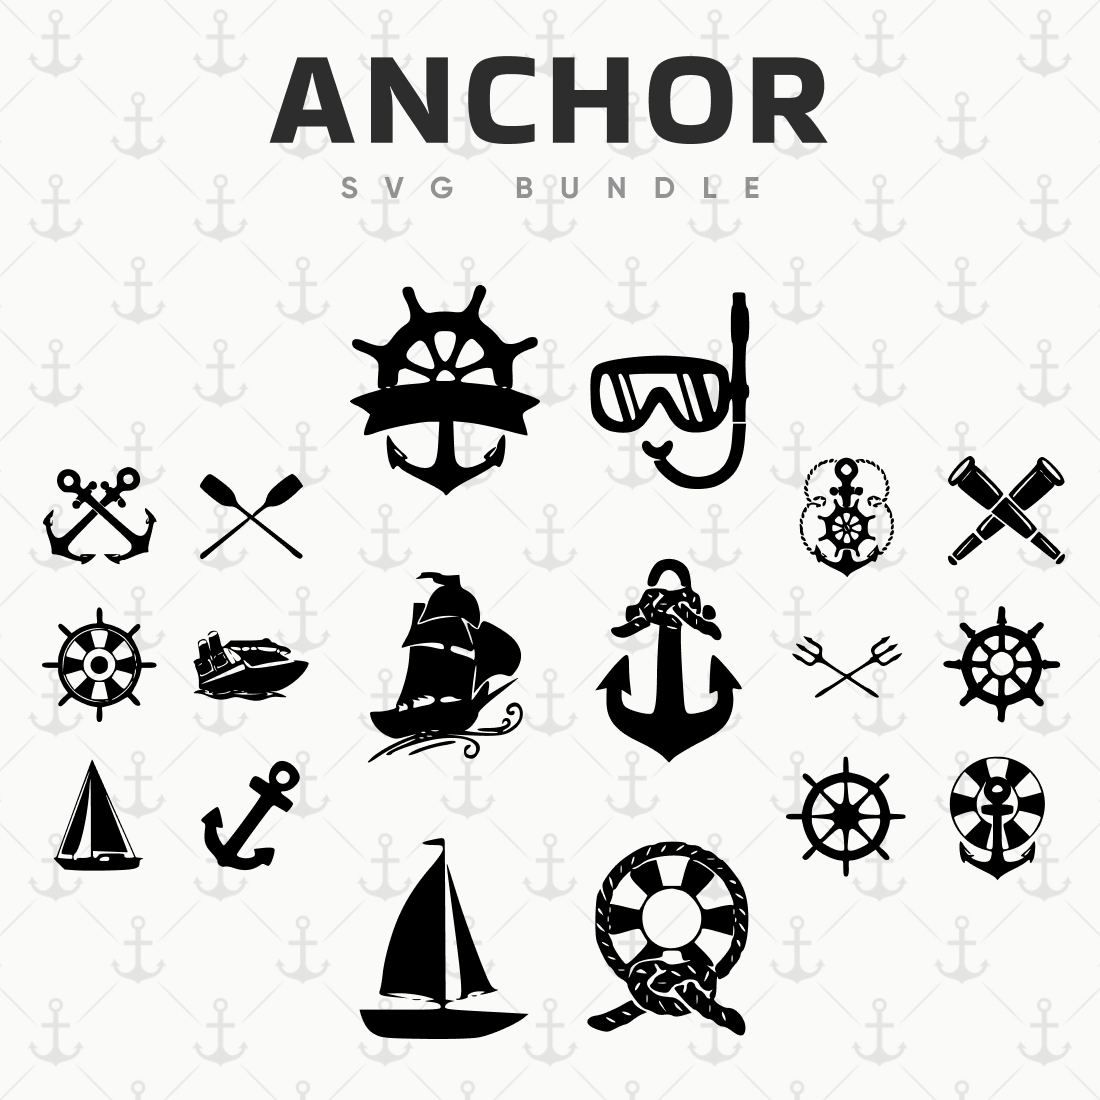 Black Symbols of Anchor SVG Bundle.